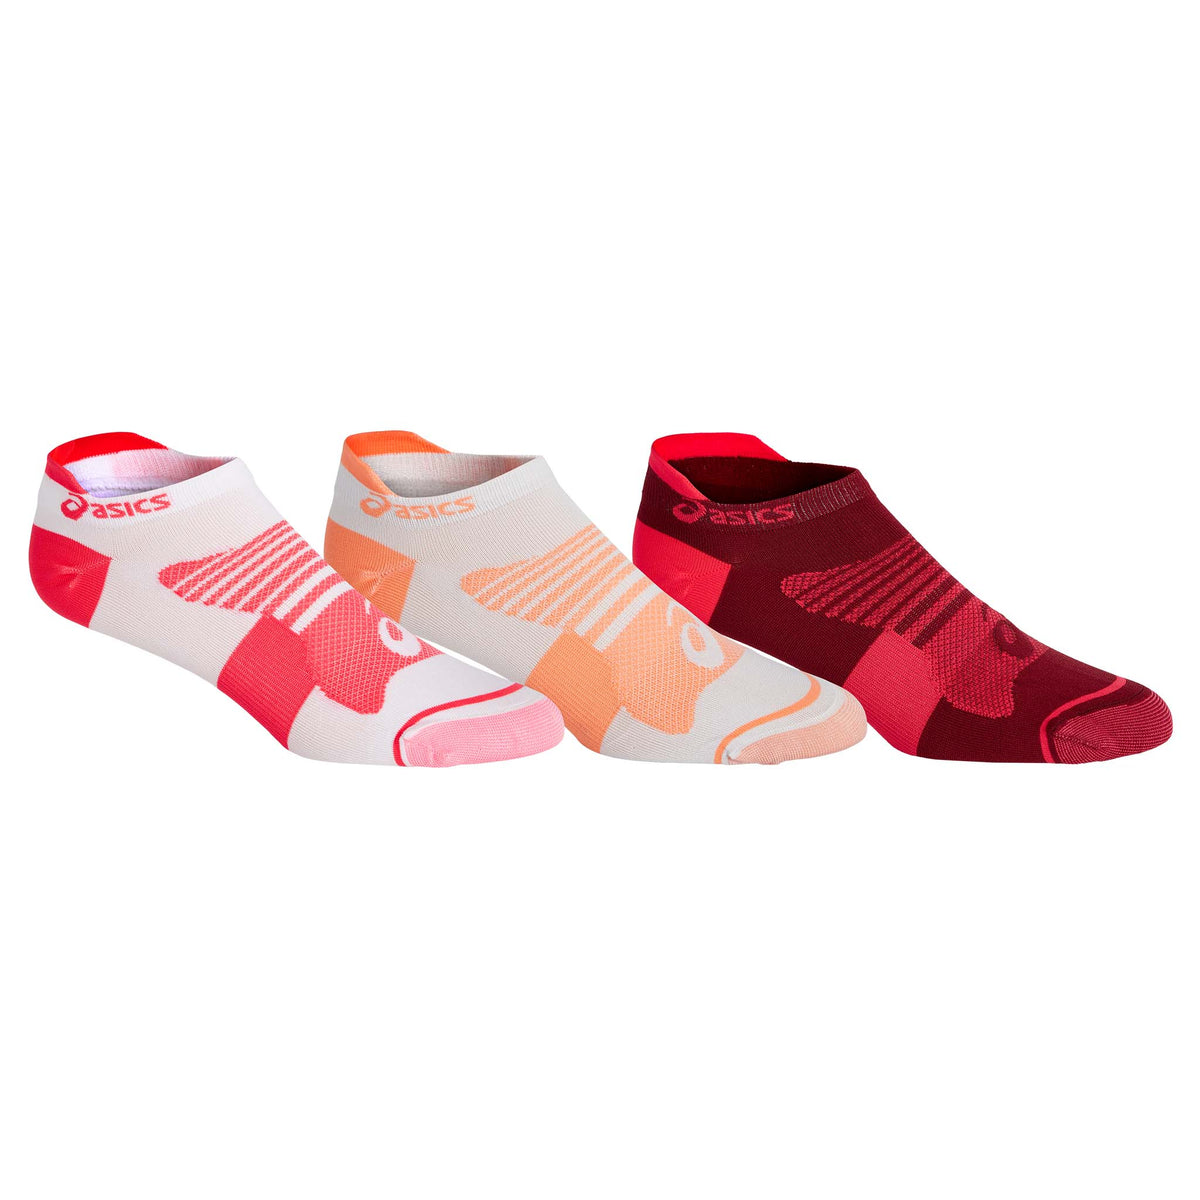 Asics Quick Lyte Plus chaussettes de course femme sun coral laser pink pop